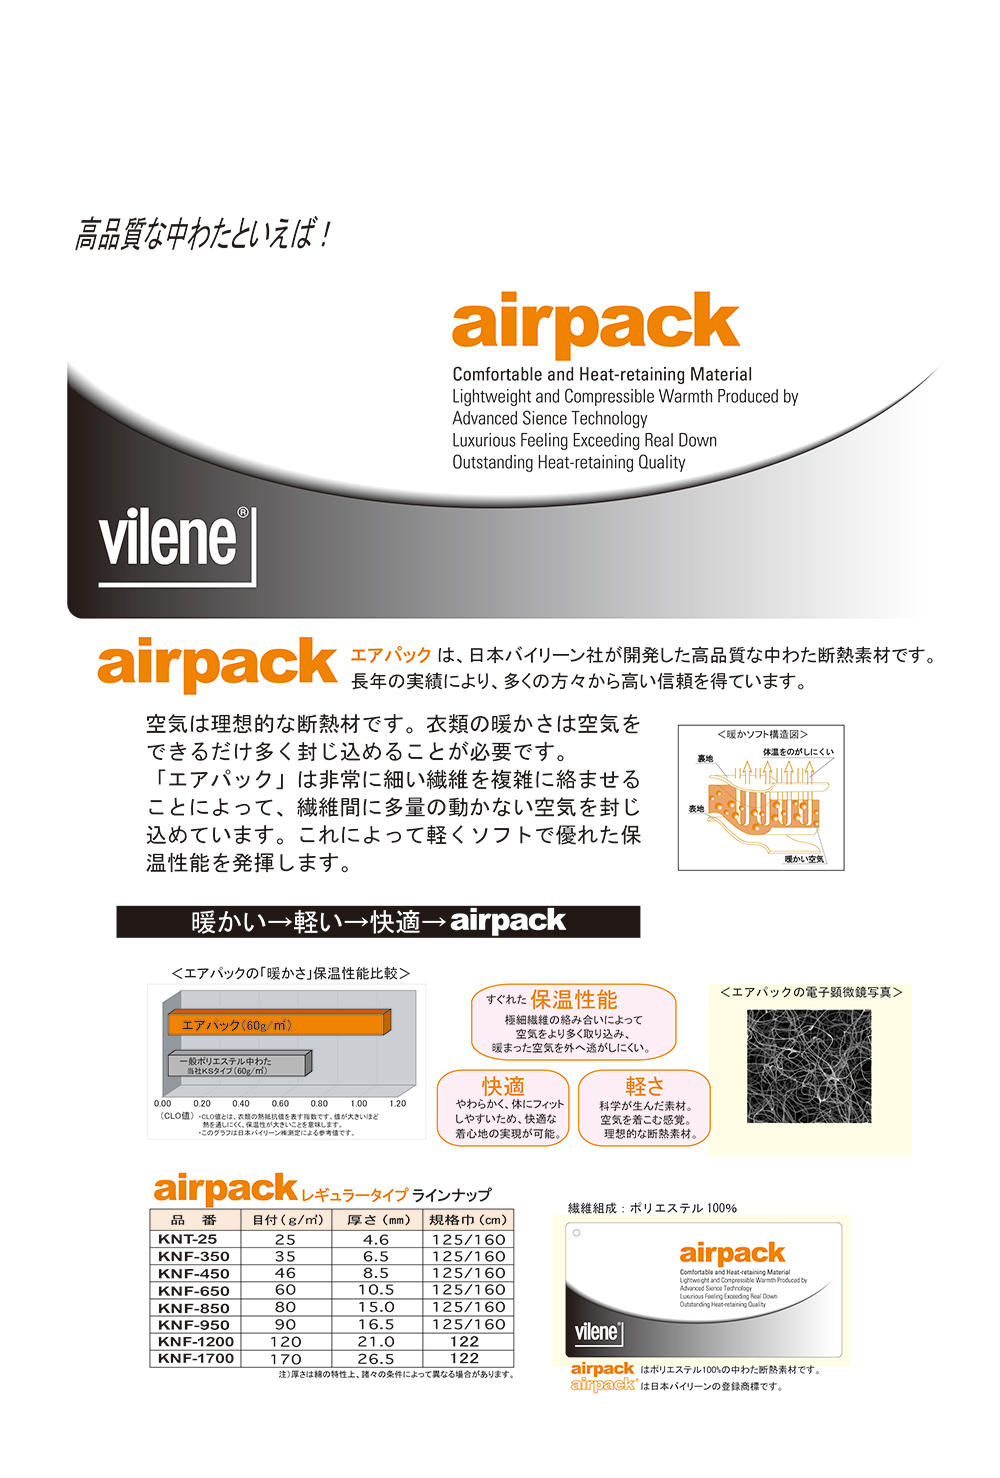 KNF1200 Quilt Batting Air Pack 120g[Einlage] Vilene (JAPAN Vilene)